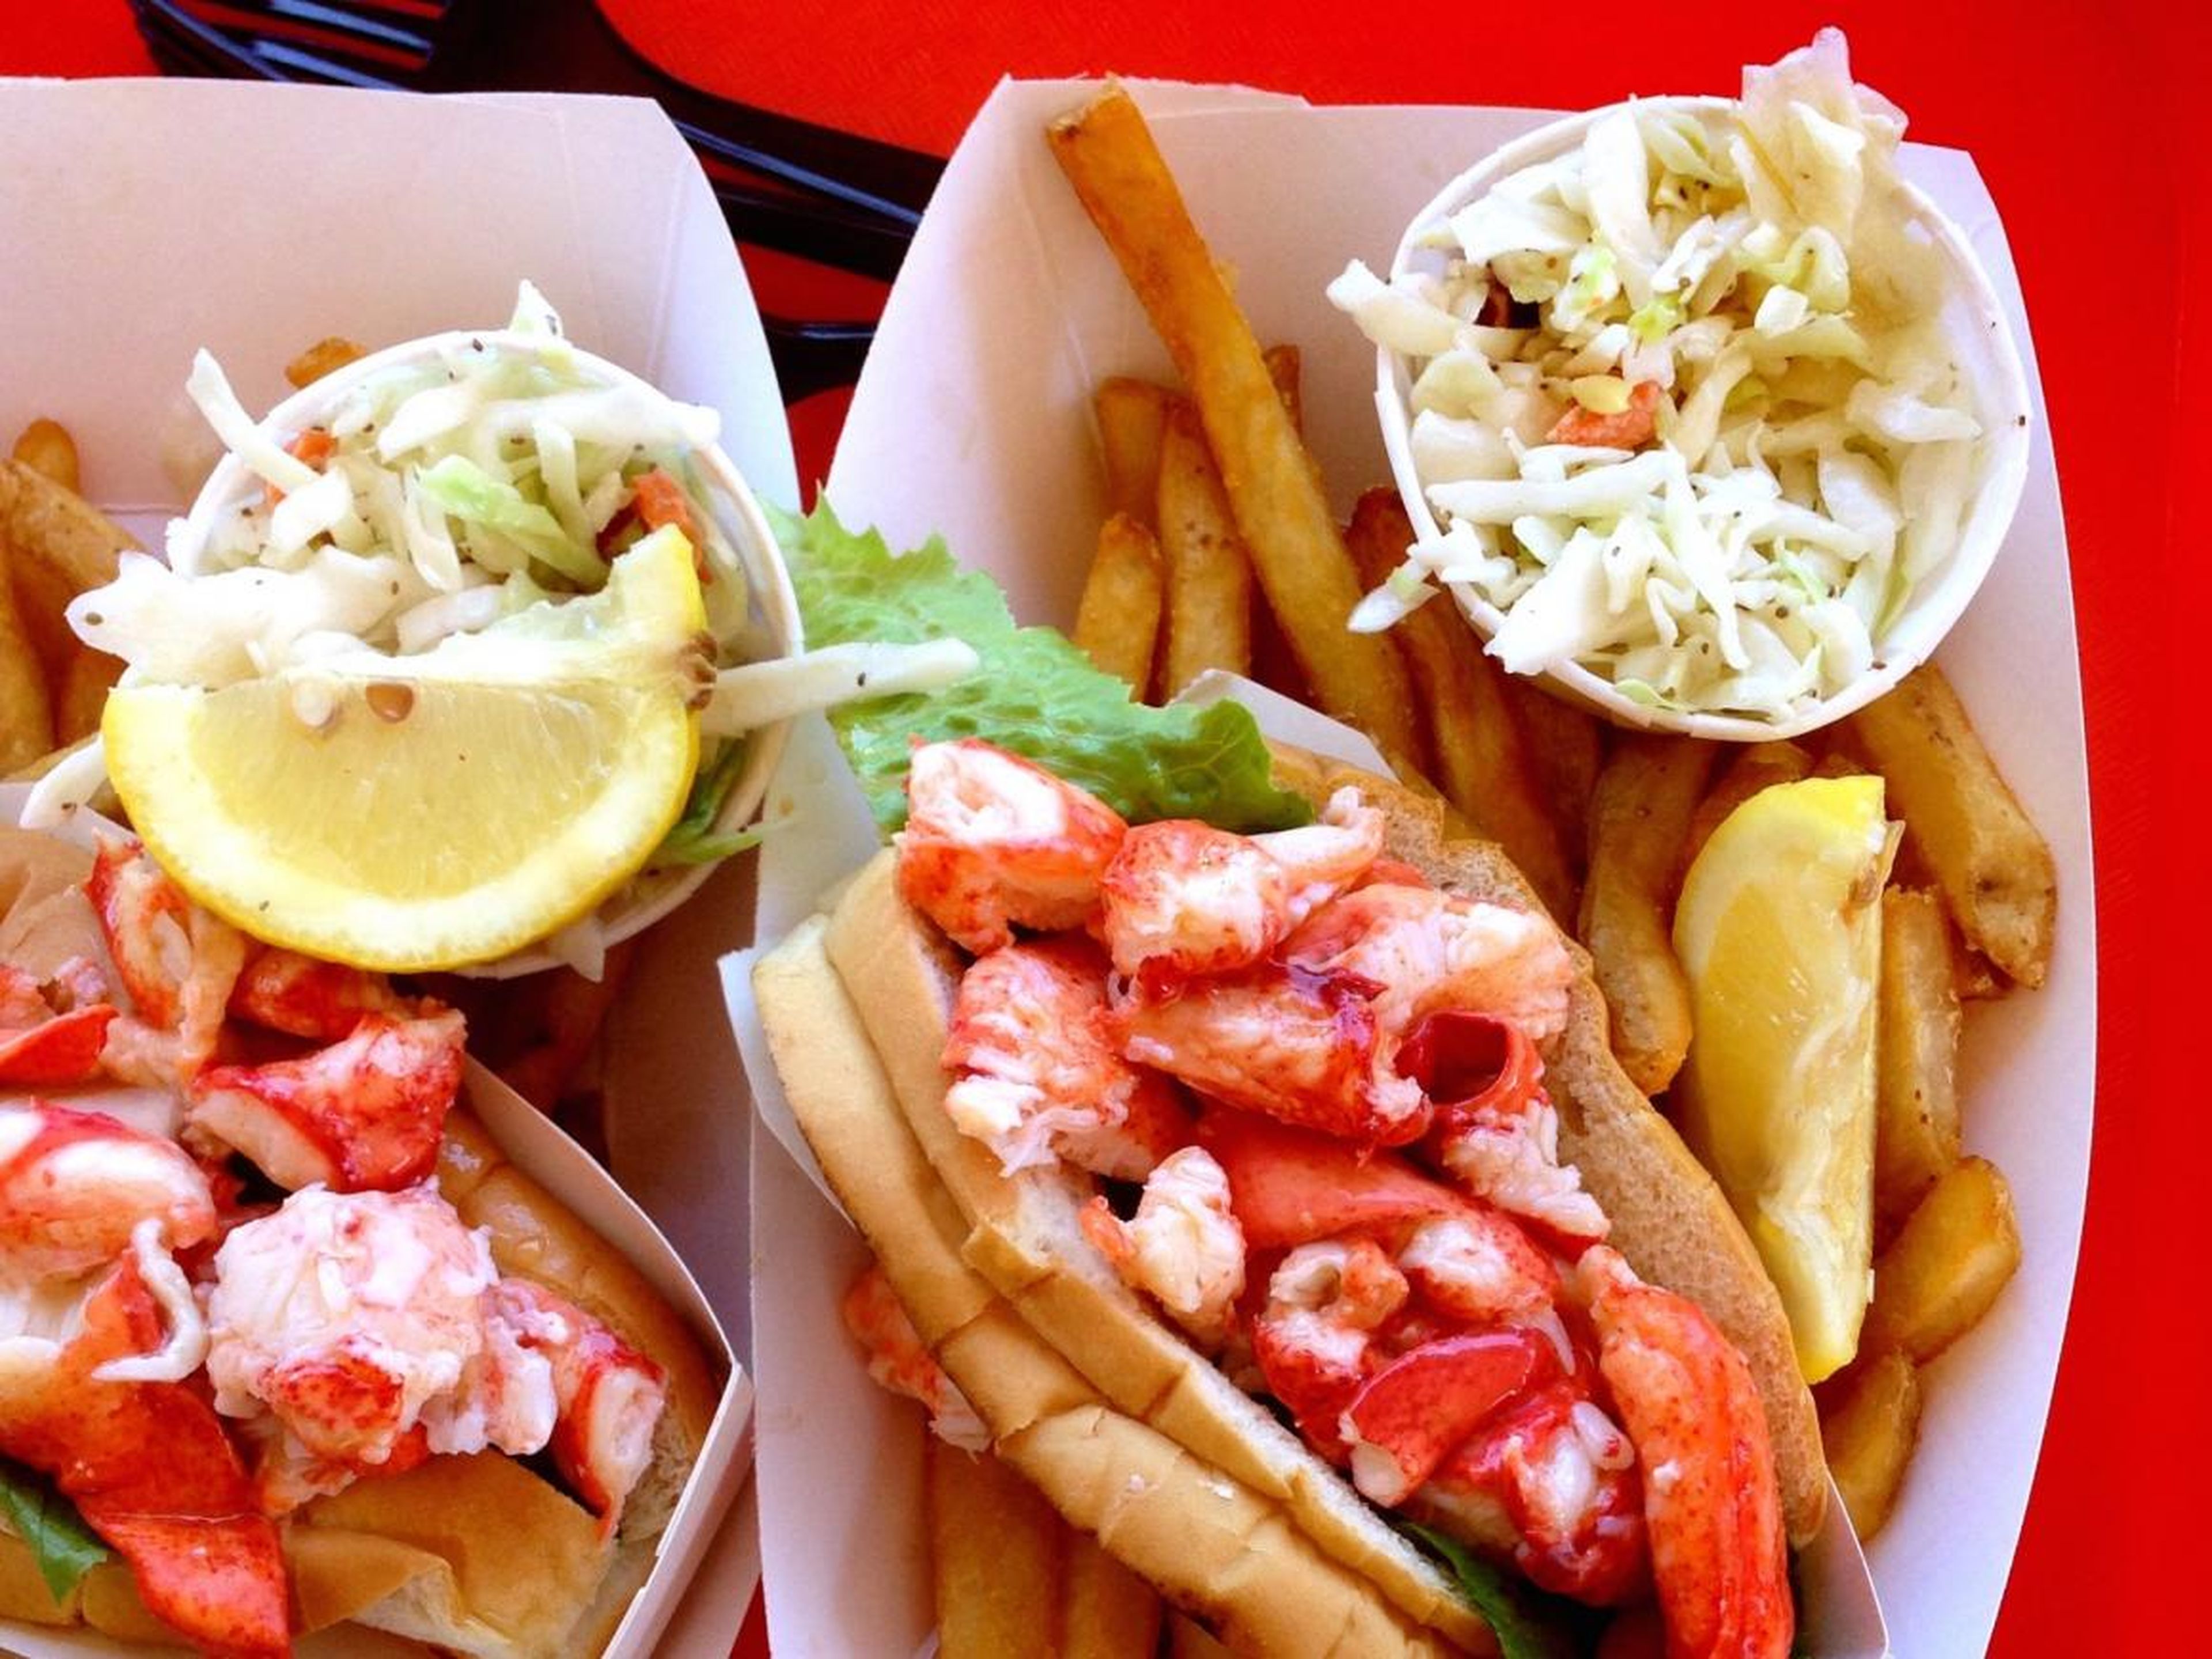 Lobster rolls con ensalada de col y papas fritas.